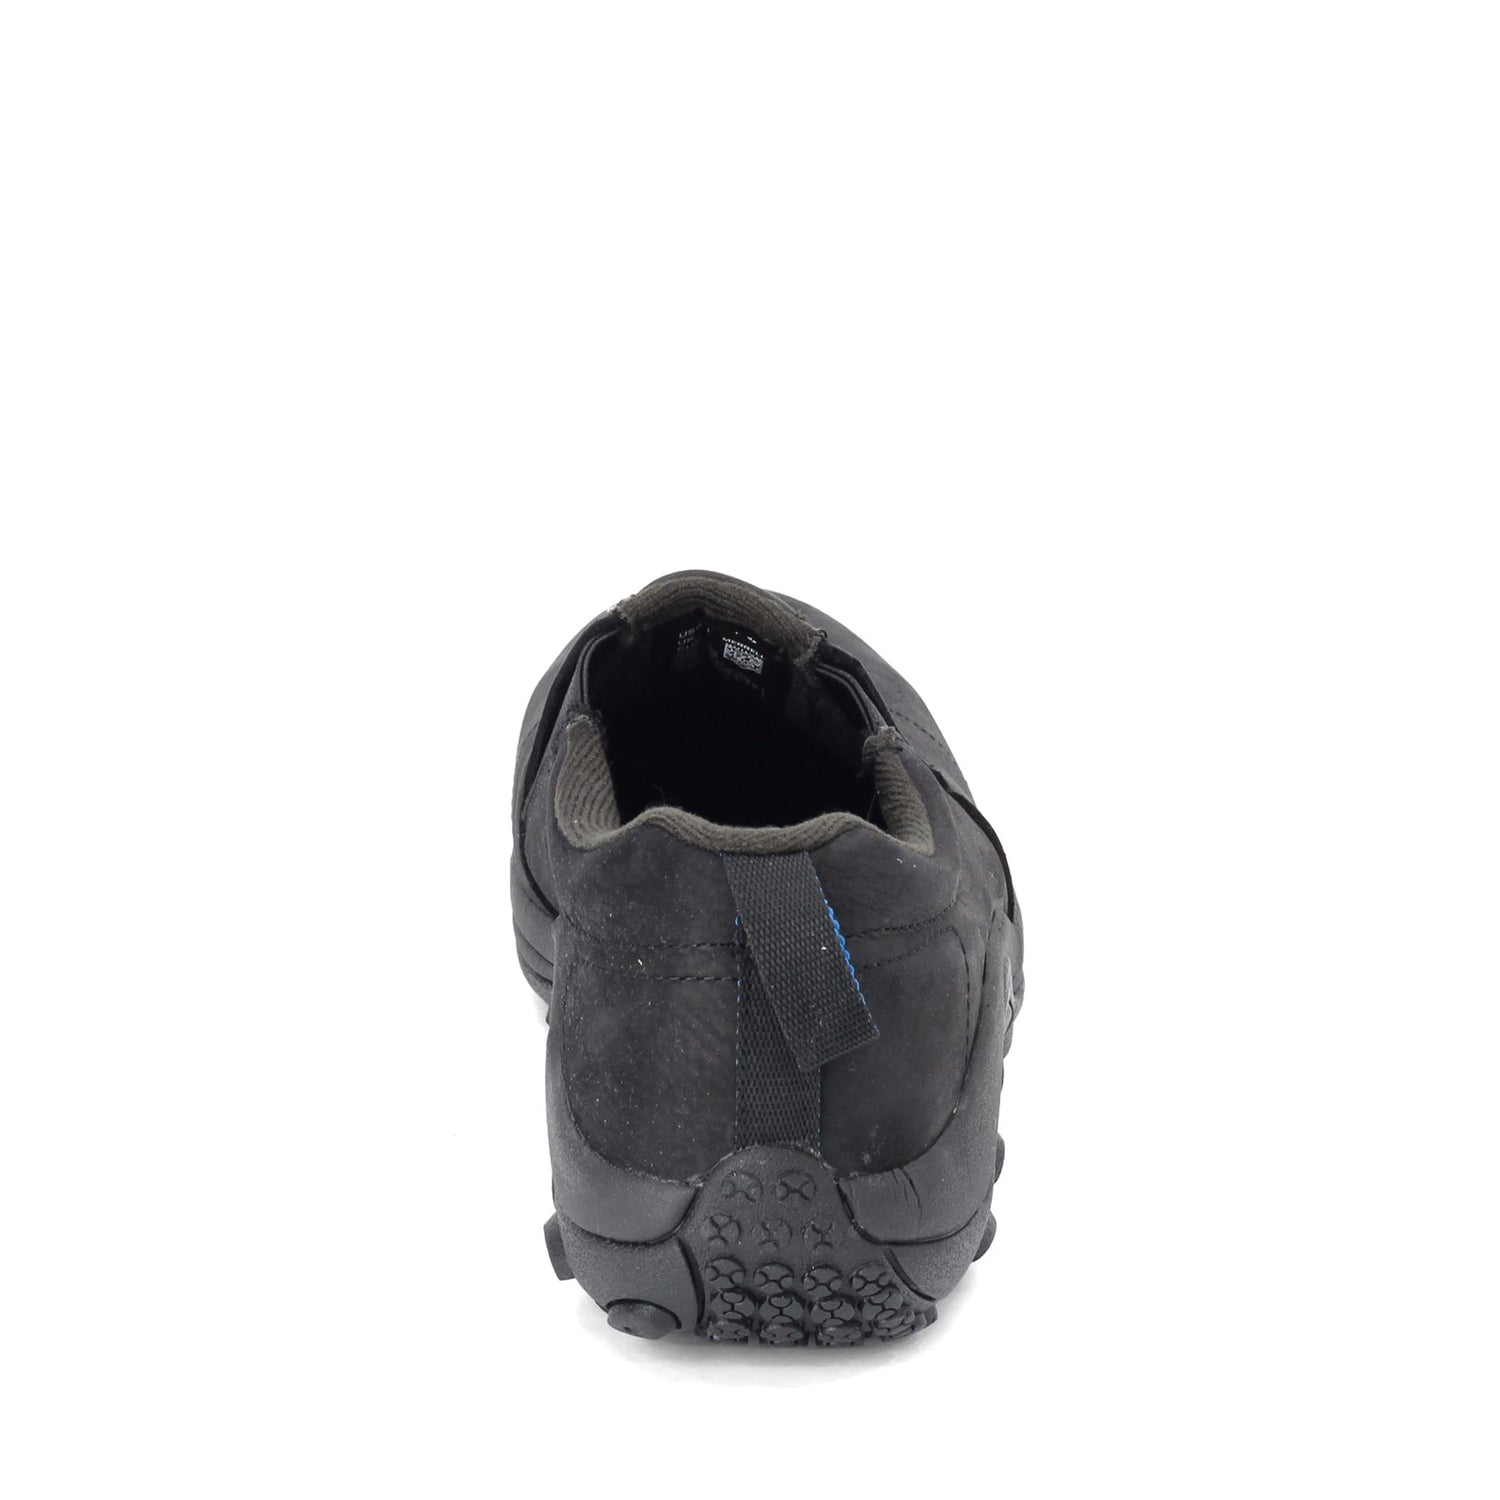 Peltz Shoes  Men's Merrell Jungle Moc Static Dissipative Work Shoe - Wide Width BLACK J099379W